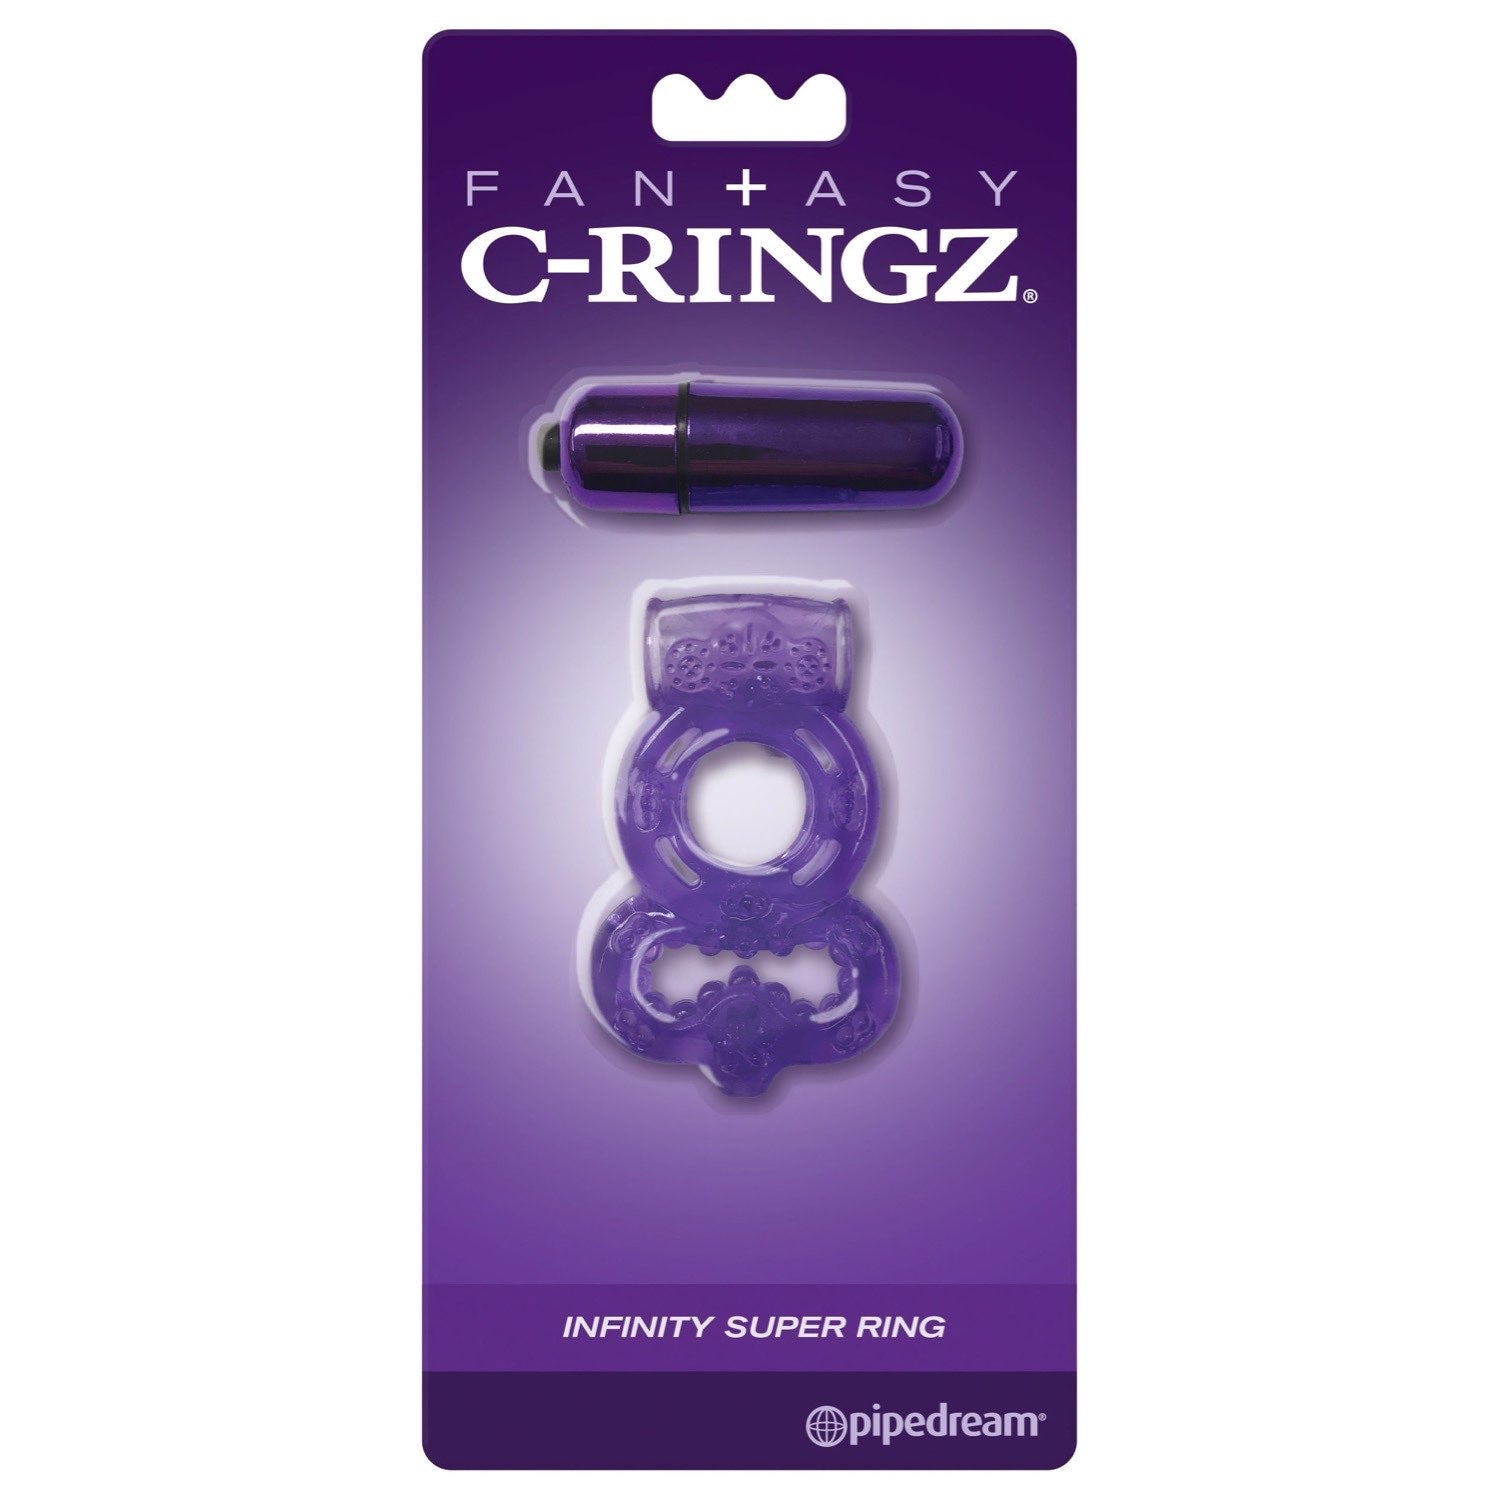 幻想C环 Infinity Super Ring - 紫色振动旋塞和球环 by Pipedream